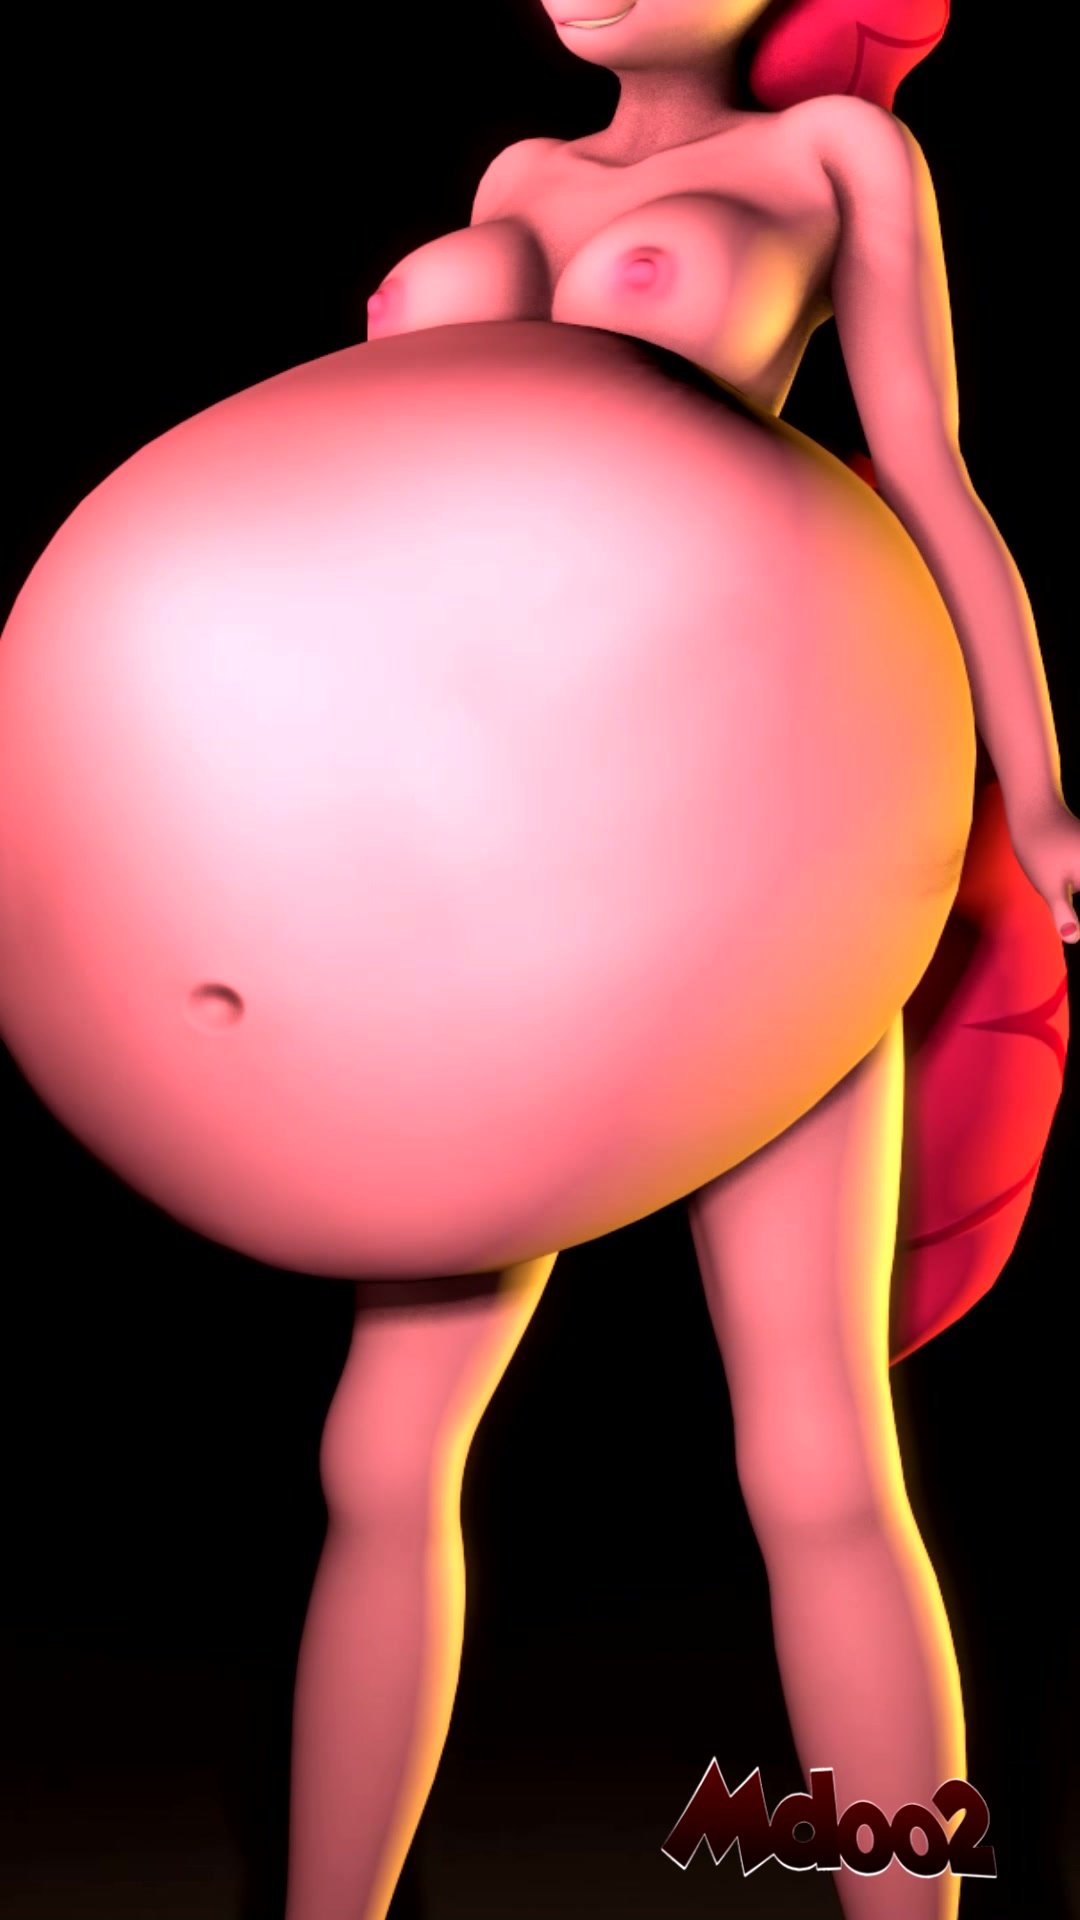 Pinkie Pie Drinking Piss Porn - Pinkie pie digestion - ThisVid.com